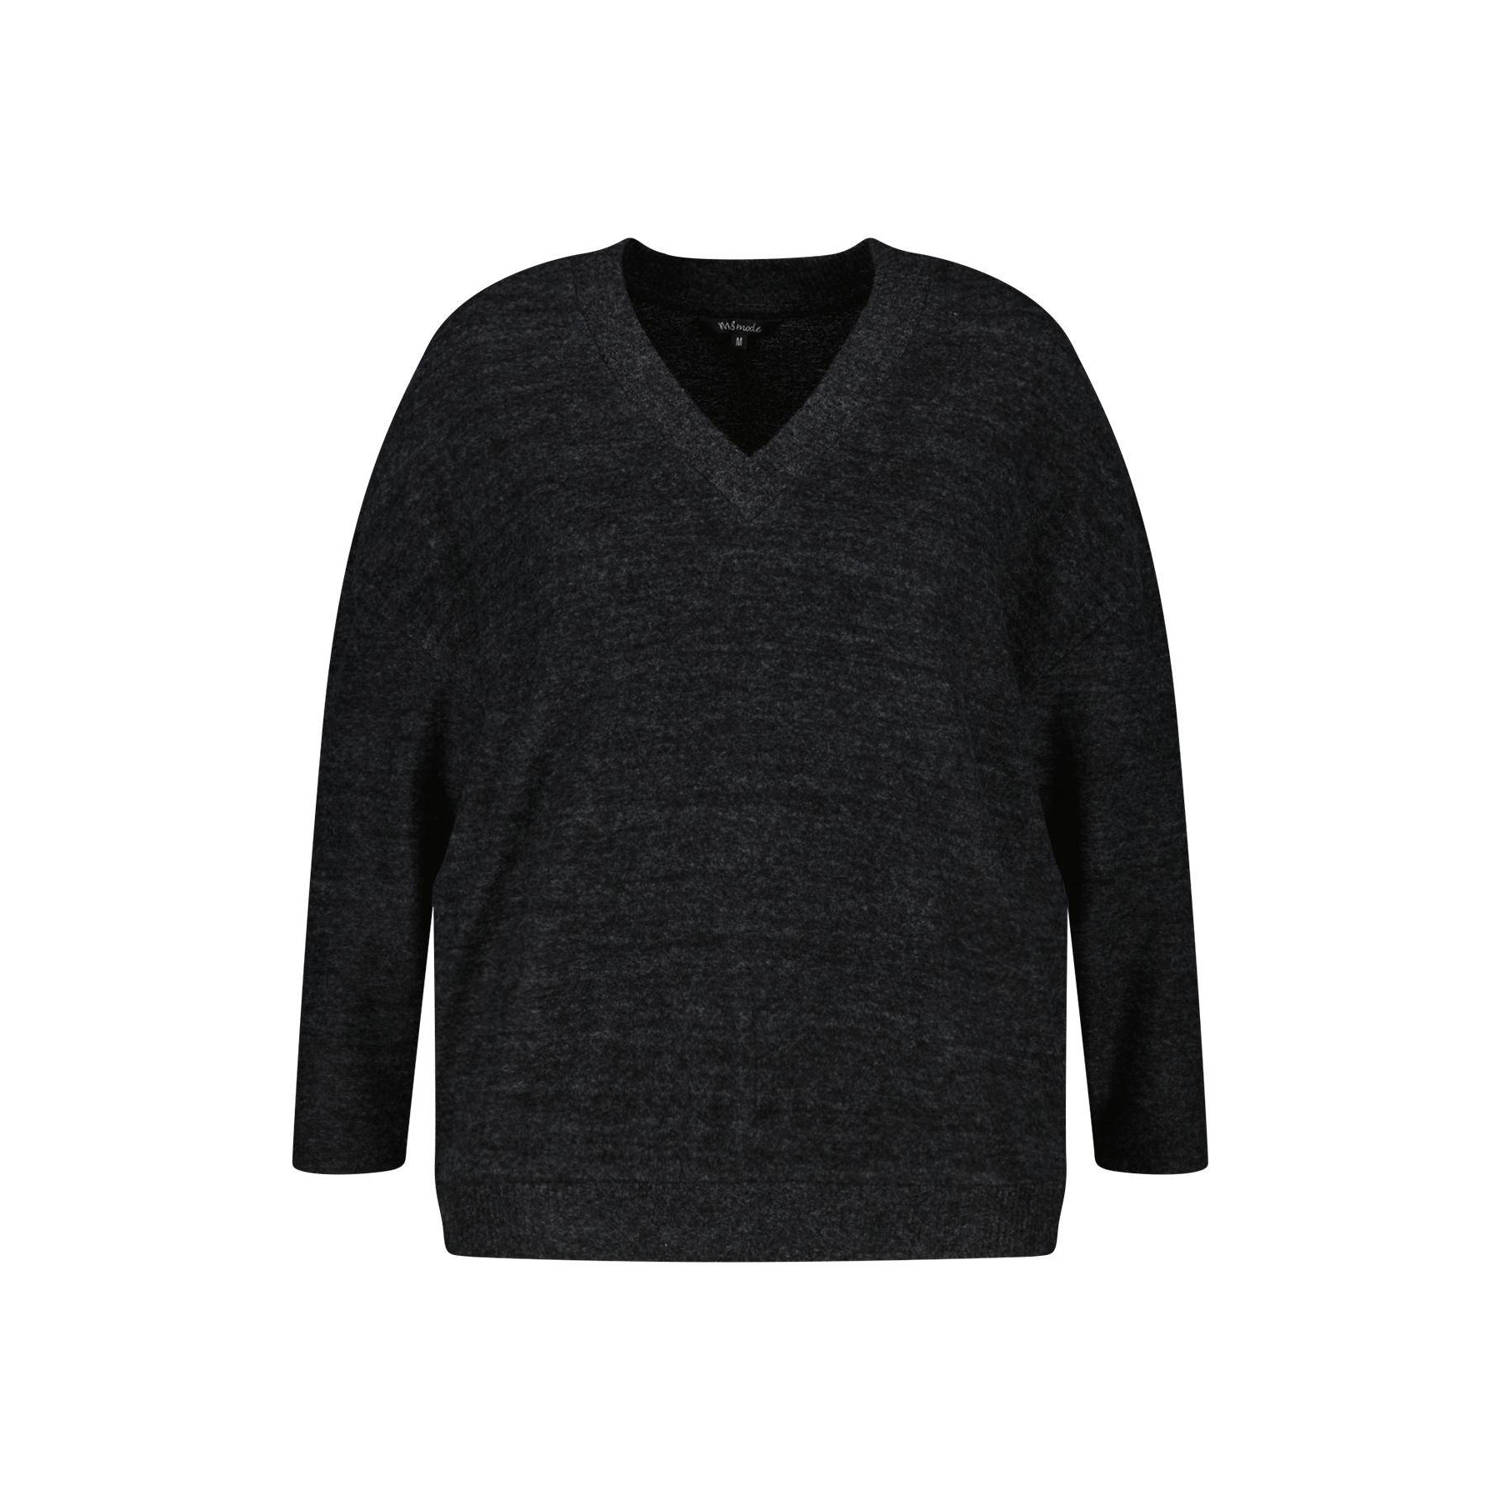 MS Mode fijngebreide trui zwart